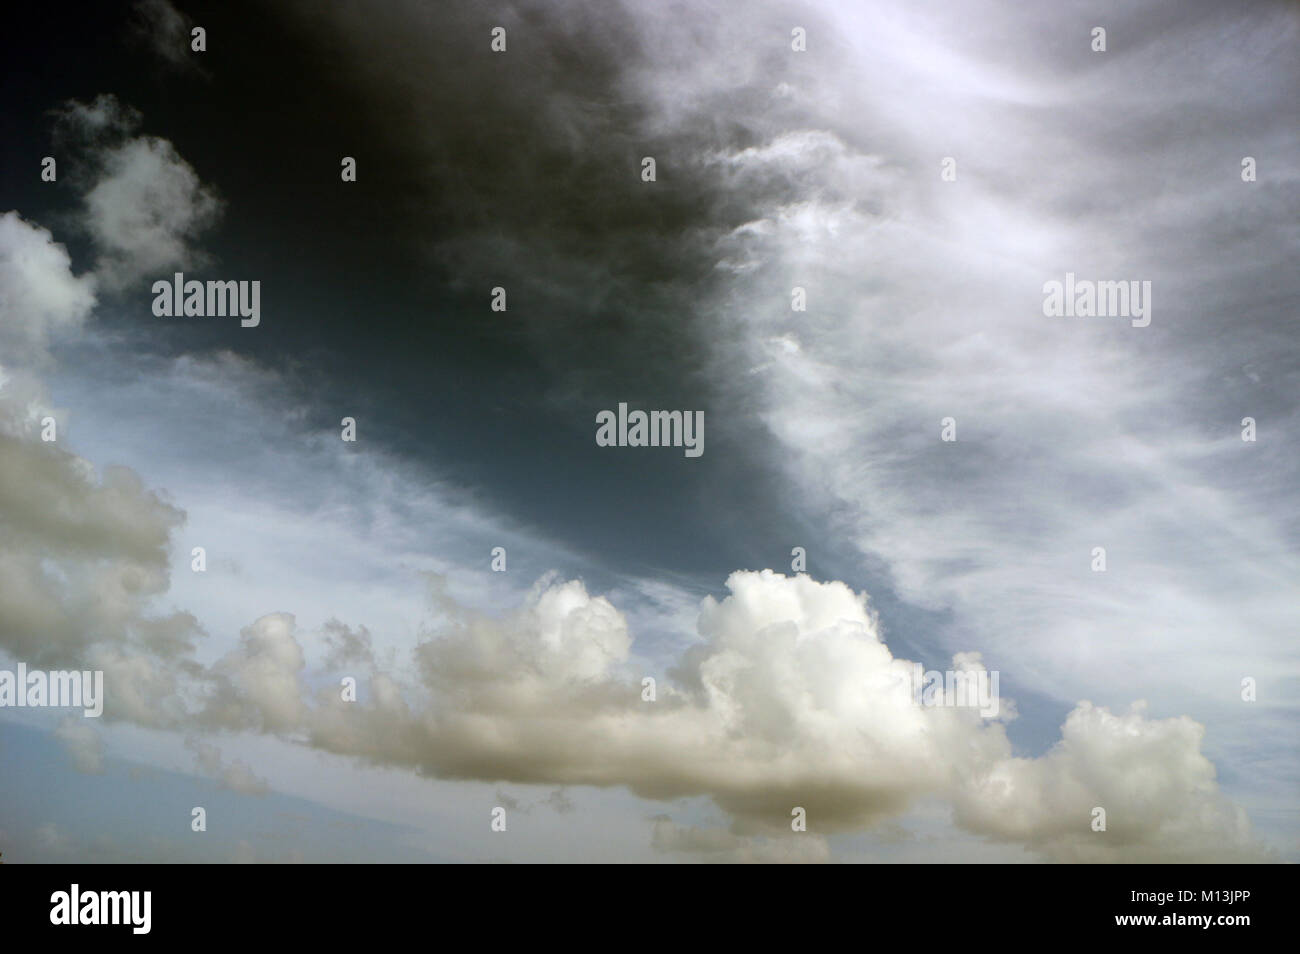 Schwere weiße Wolkenschichten in einem grauen Himmel mit weißen Streifen, Engelsflügel, Drachen, Seepferd oder Geistererscheinungen. Stockfoto